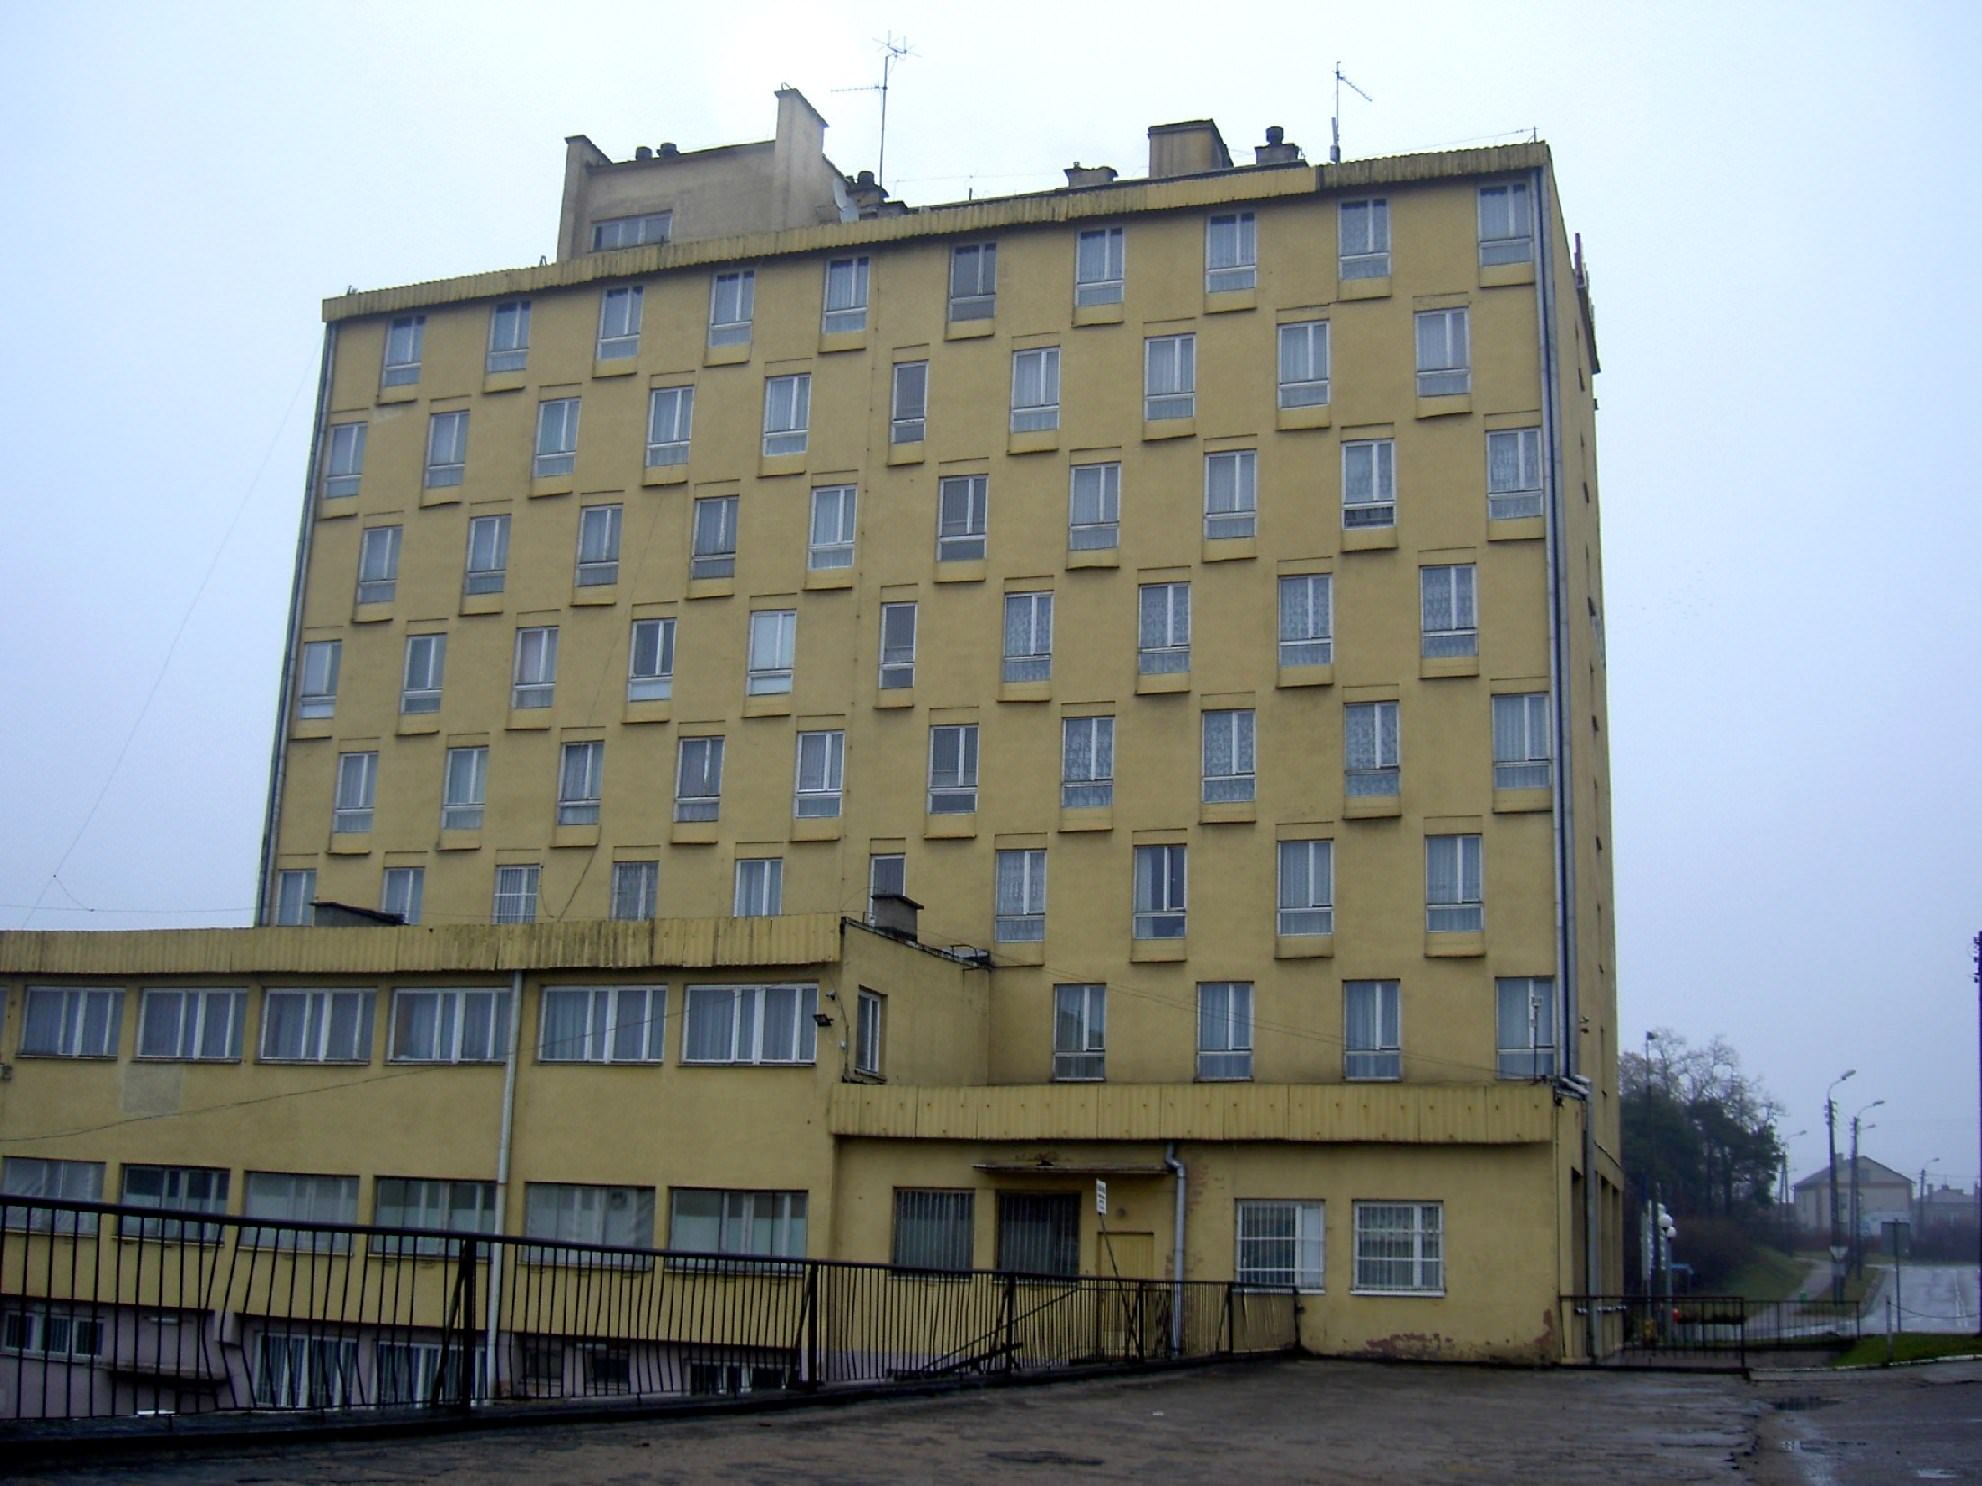 Lituanie Hotel style bloc soviétique